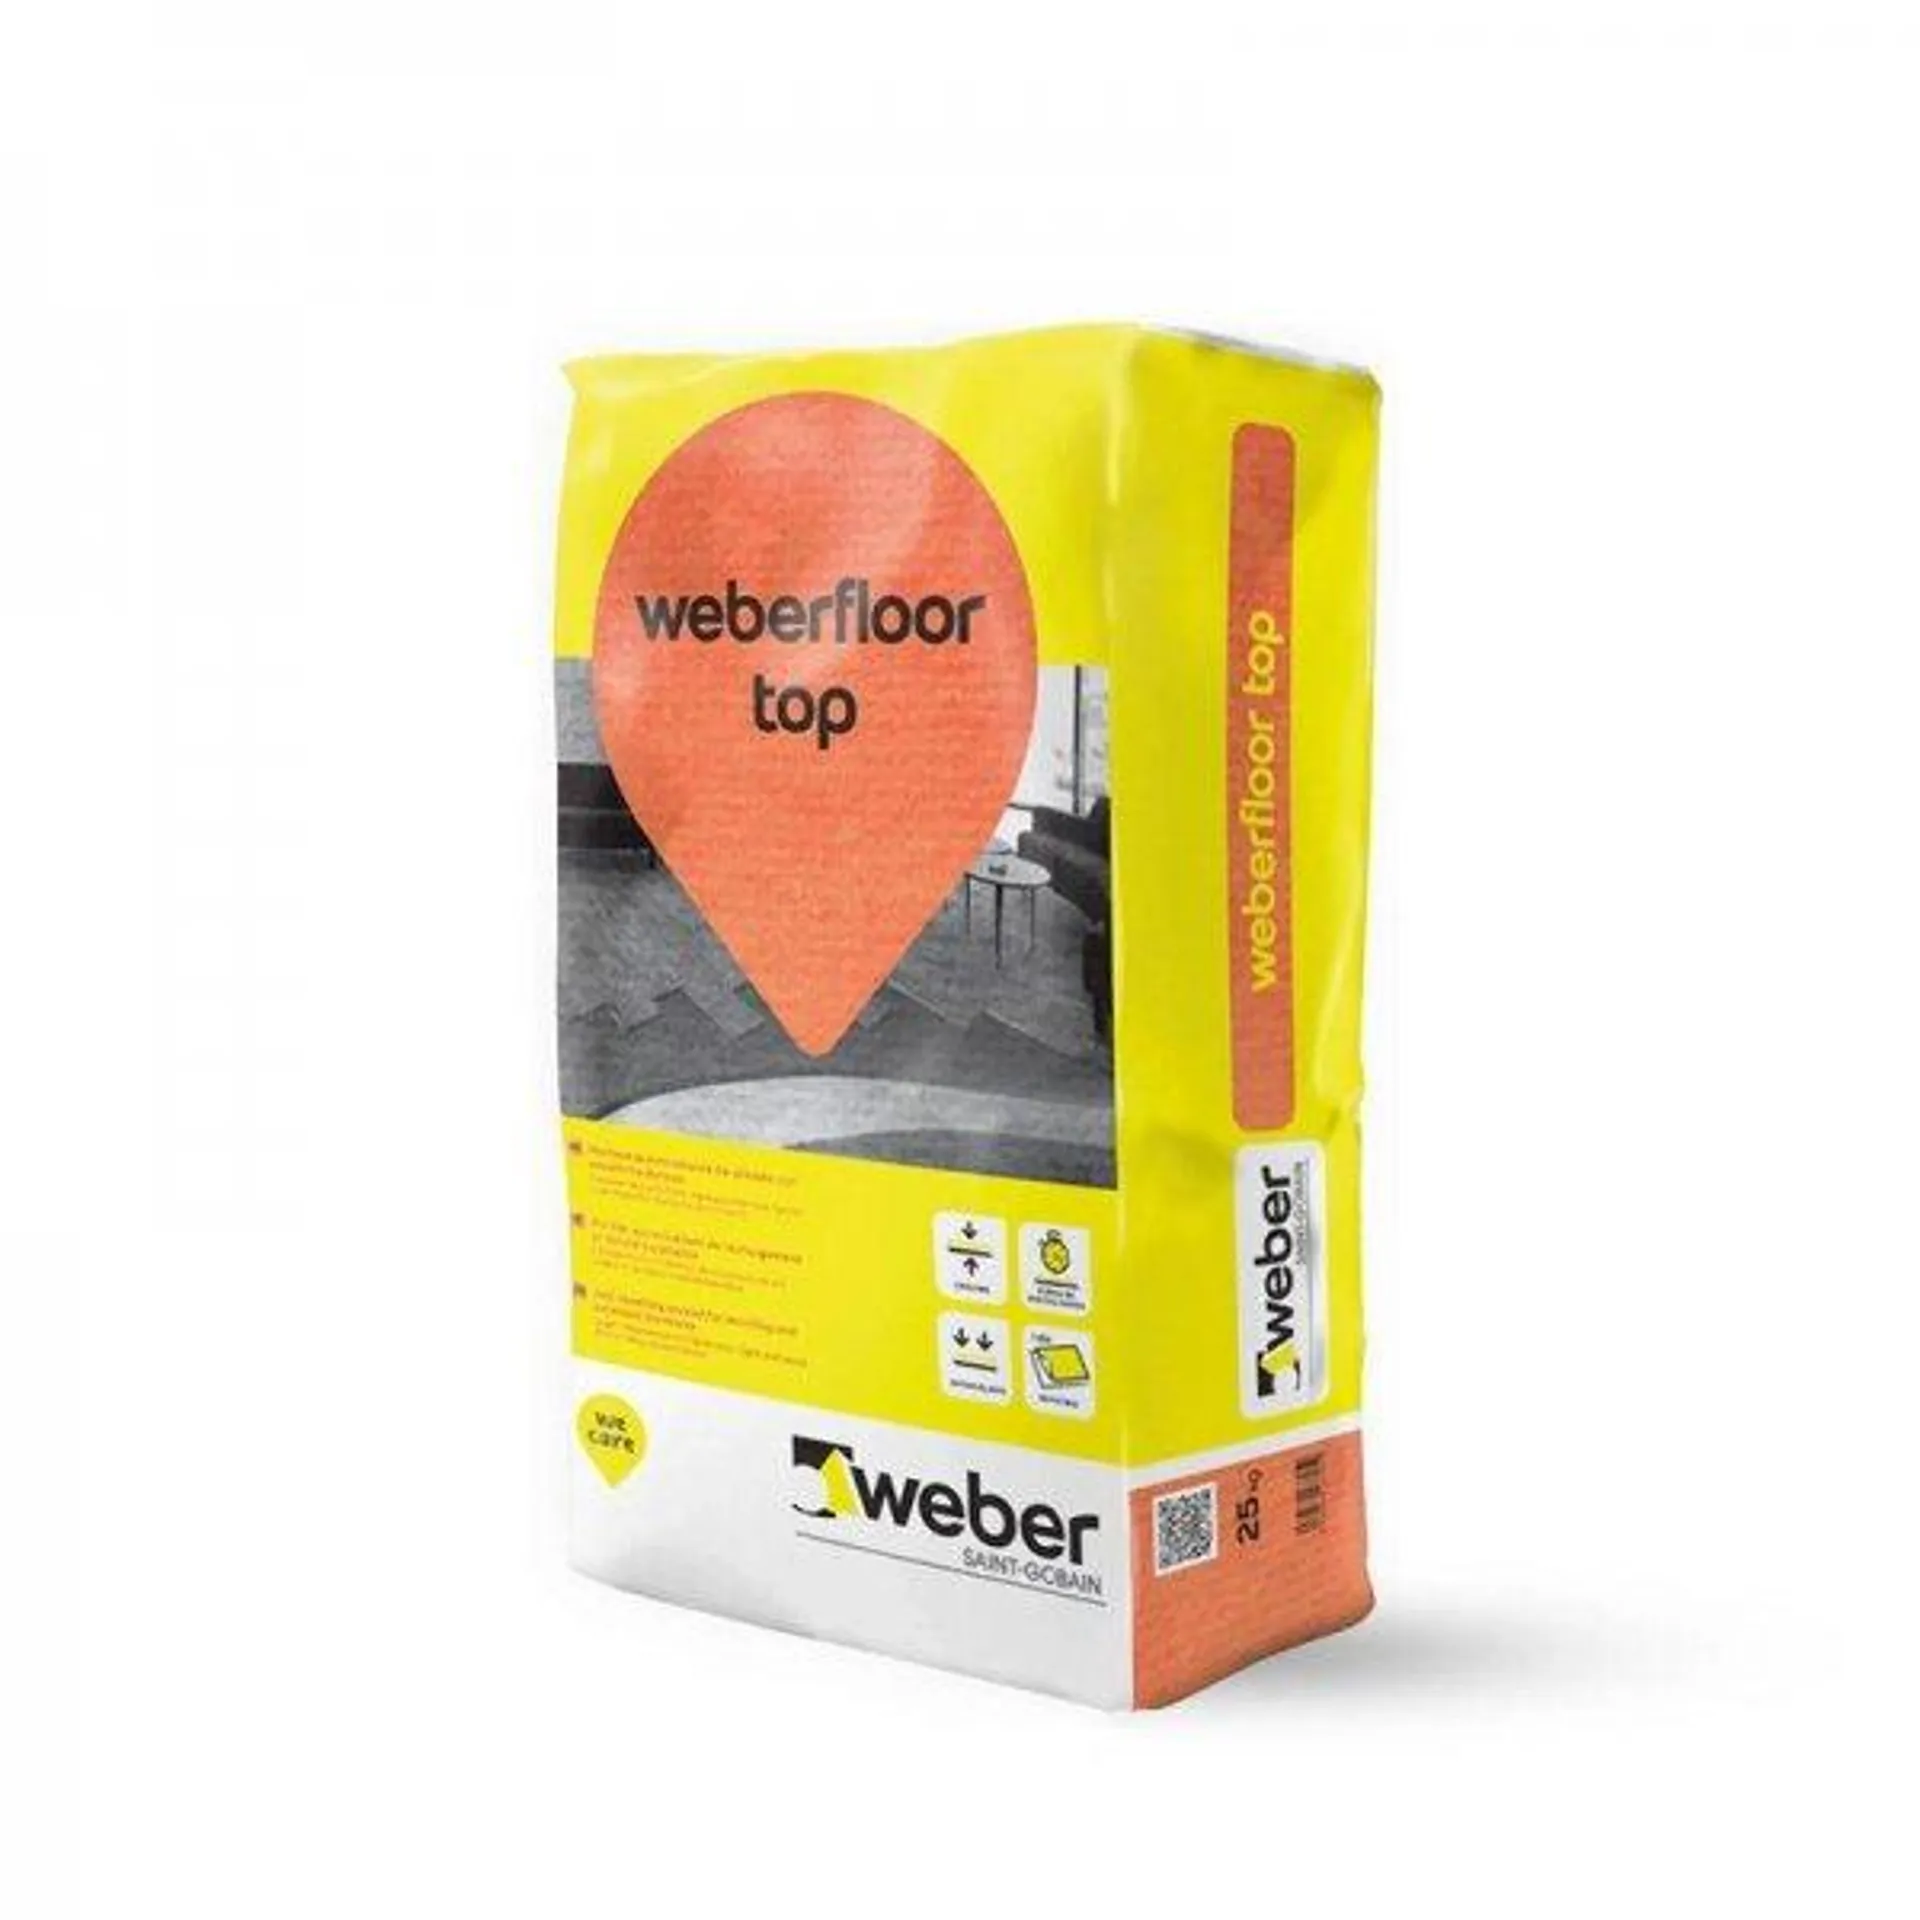 Weber.floor top cinza (25 kg)